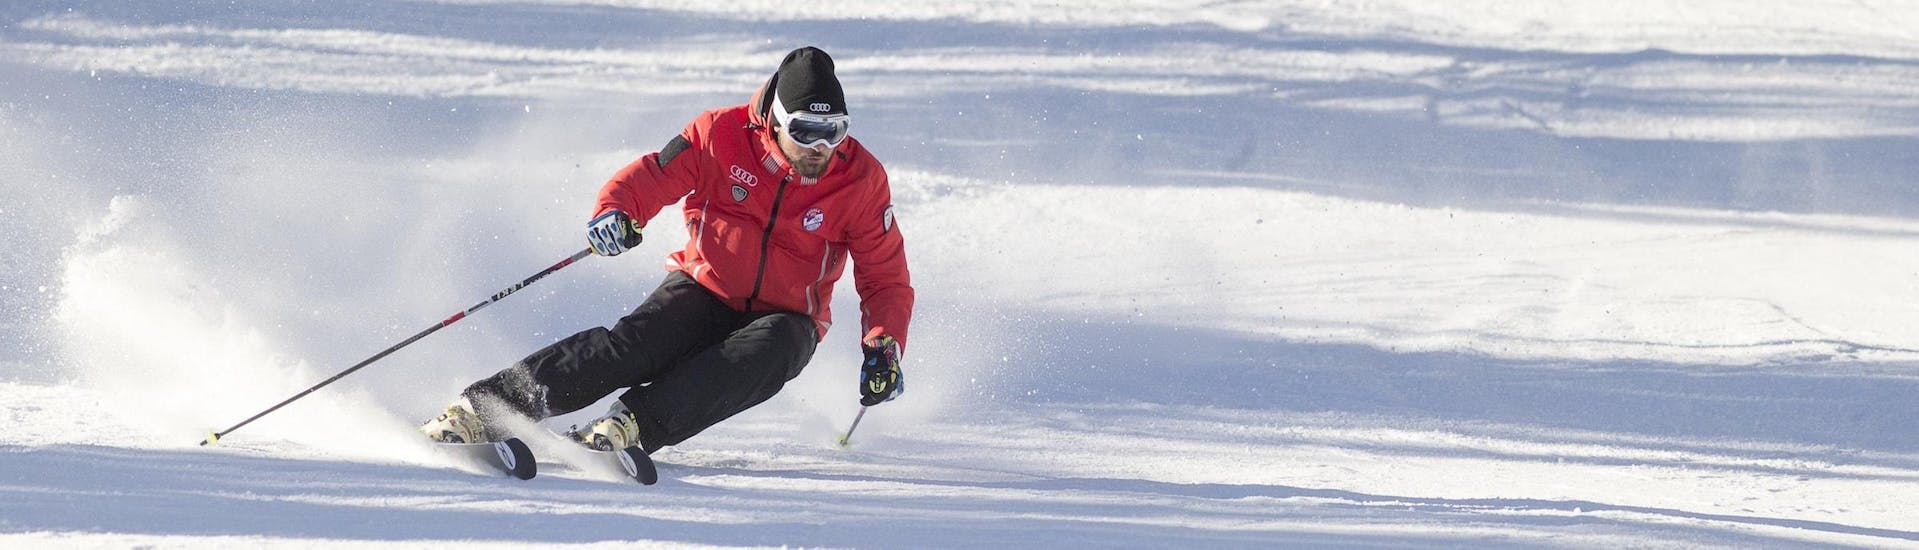 Un istruttore di sci della scuola di sci Scuola Sci Cortina sta mostrando la giusta tecnica di sci durante una delle lezioni di sci per adulti - principianti assoluti nel comprensorio sciistico di Cortina d'Ampezzo.